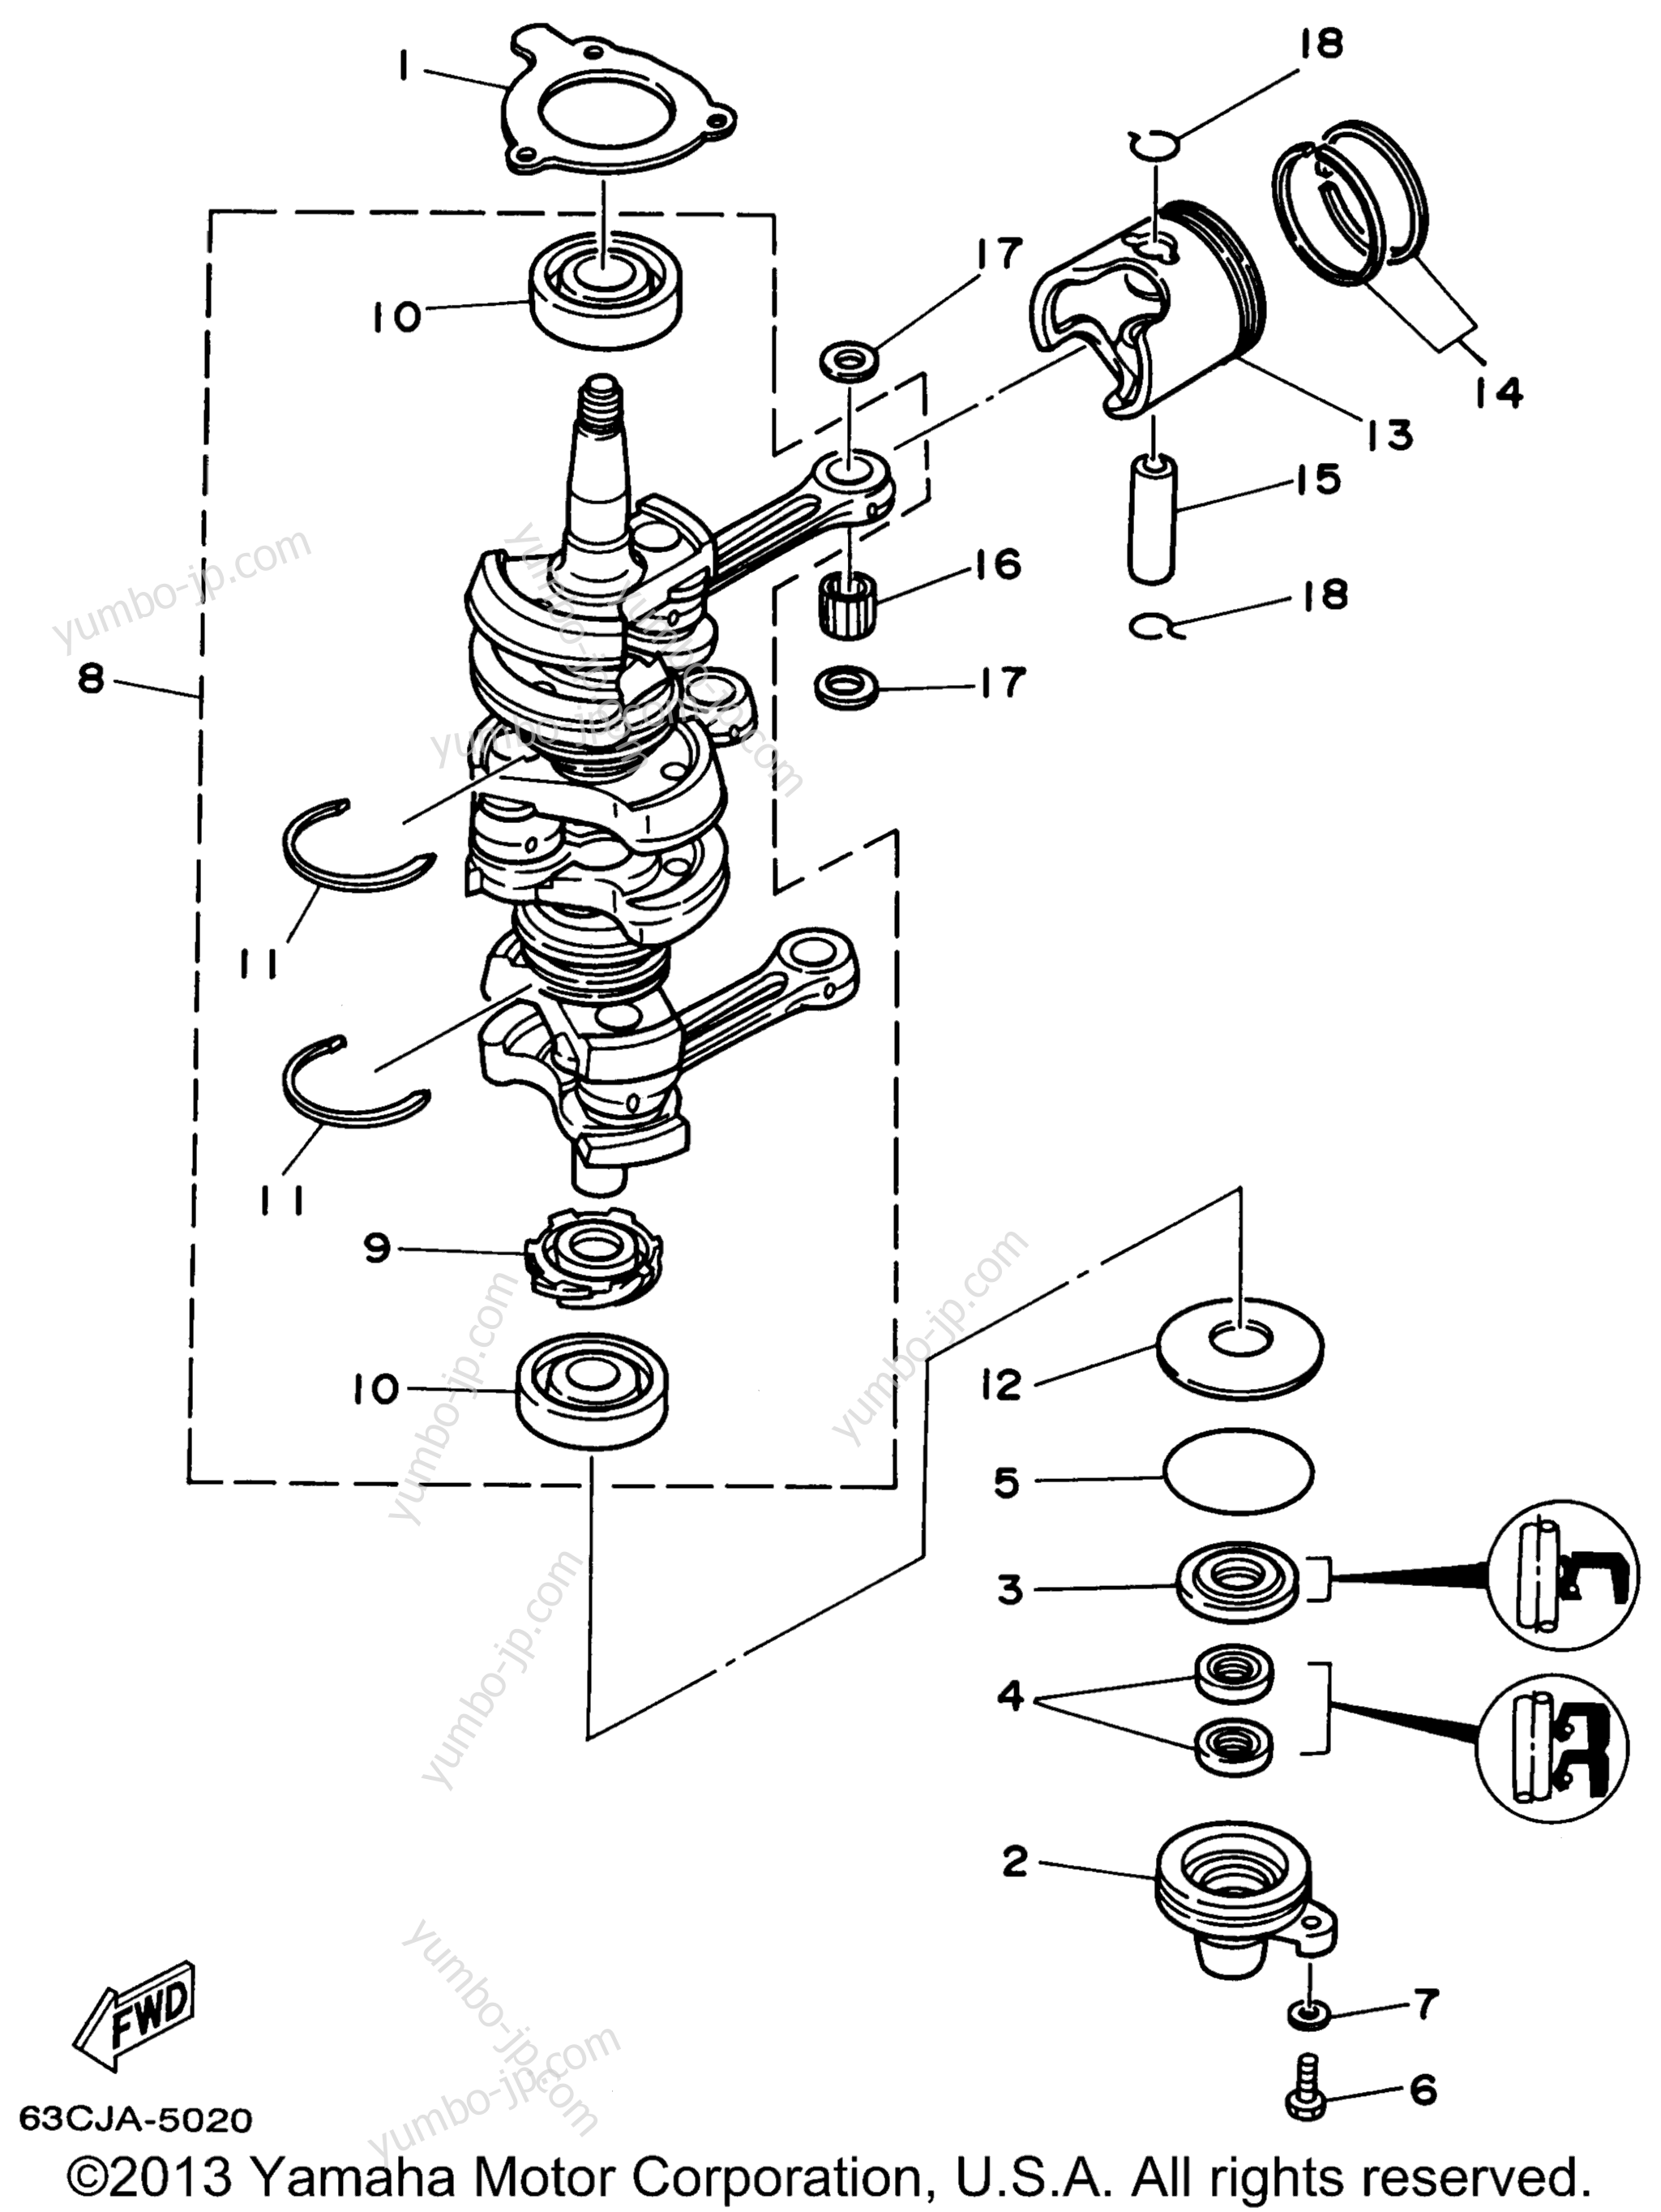 Коленвал и поршневая группа для лодочных моторов YAMAHA P40EJRW_THLW (40EJRW) 1998 г.